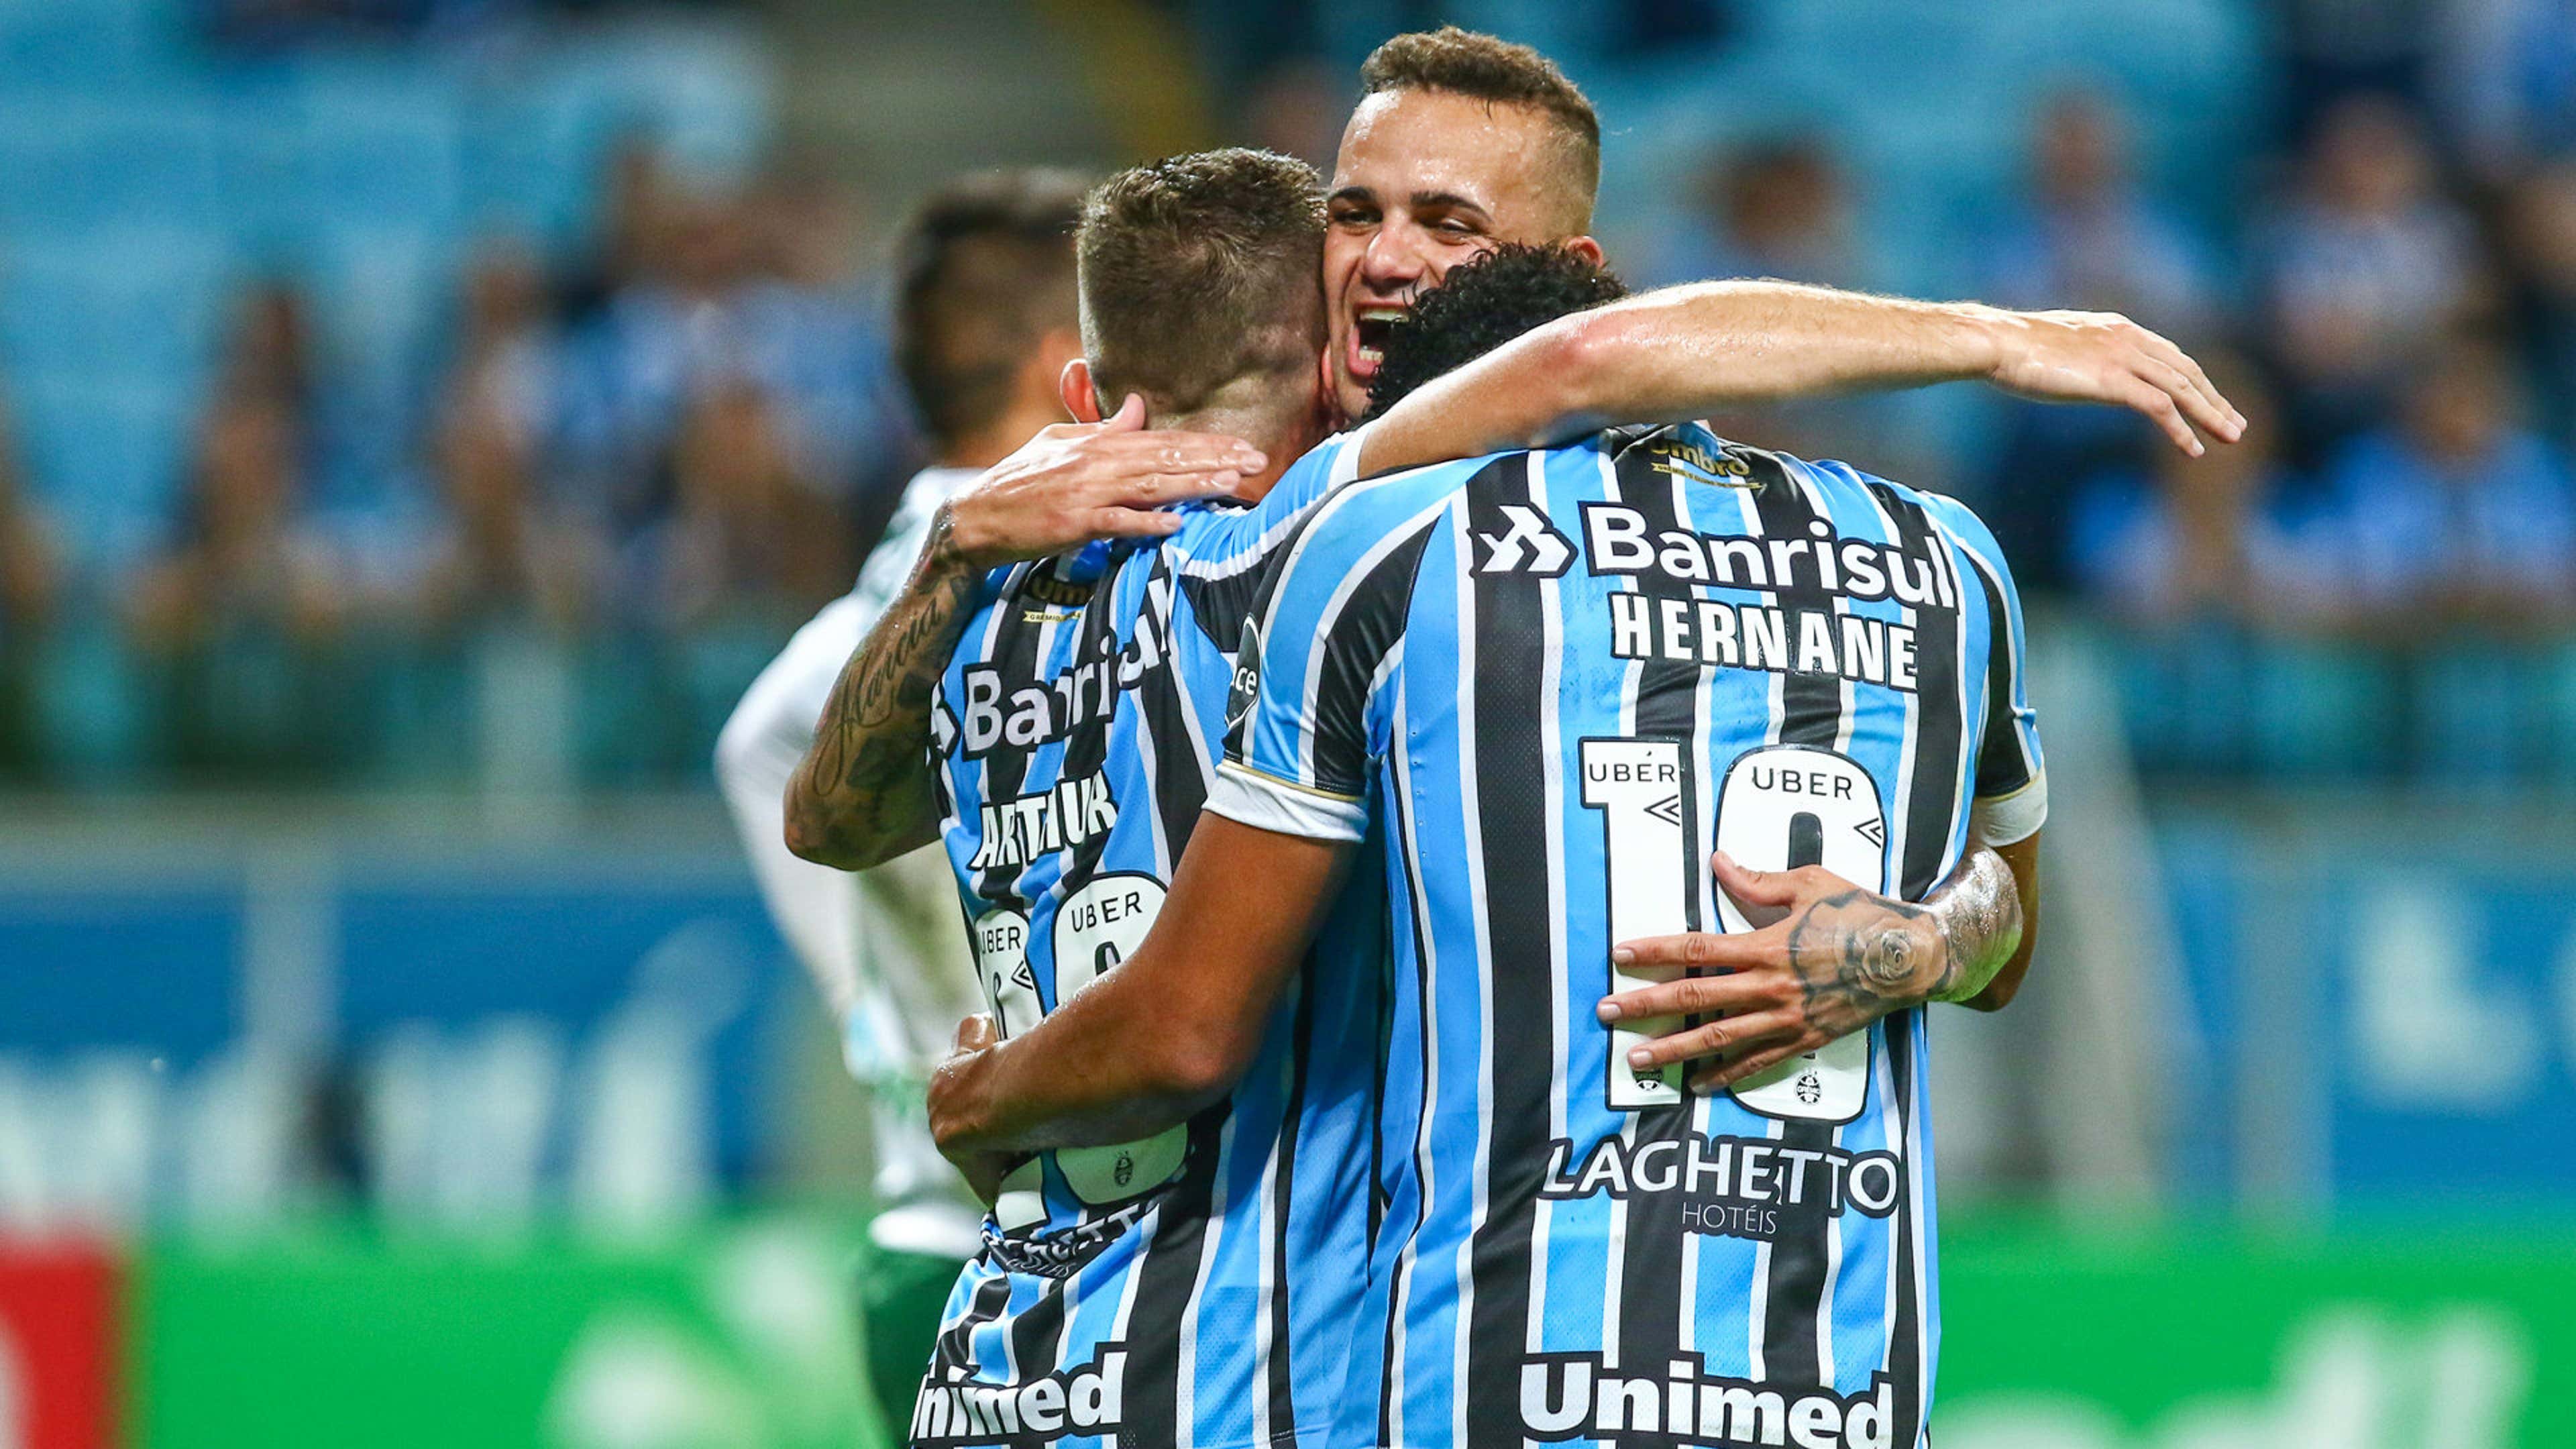 Grêmio vs Palmeiras: A Classic Encounter